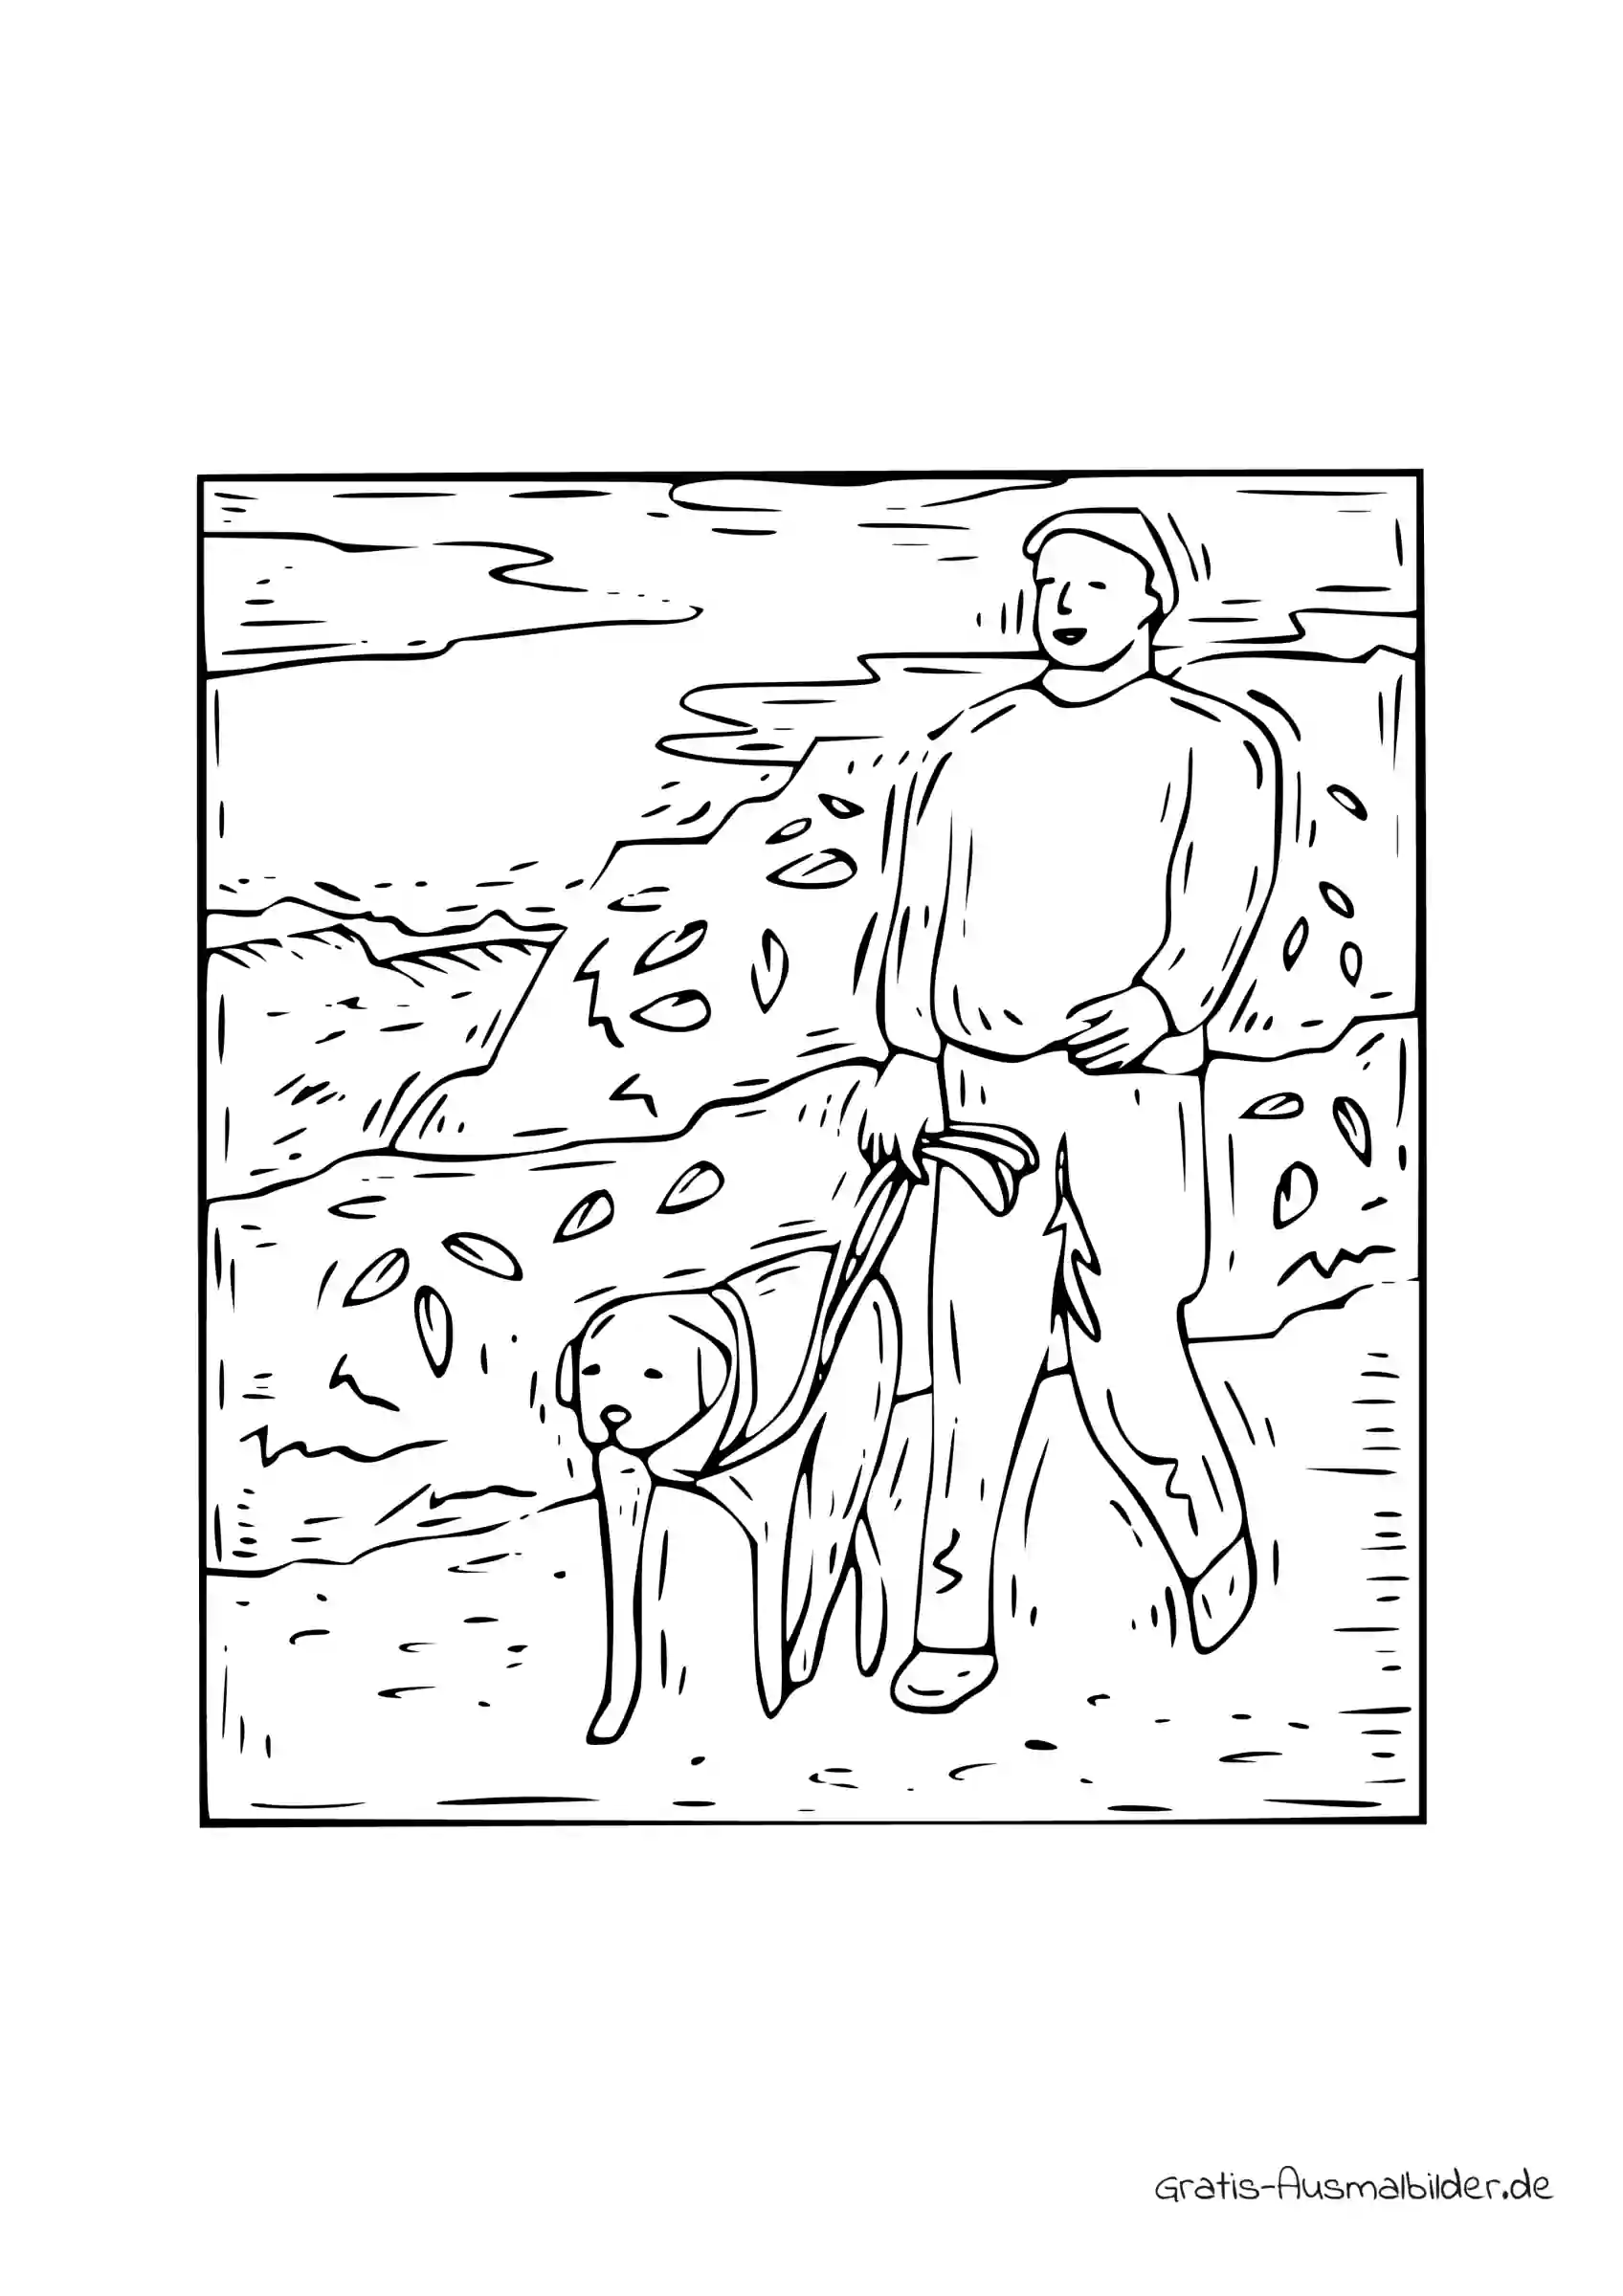 Ausmalbild Mensch mit Hund an Leine